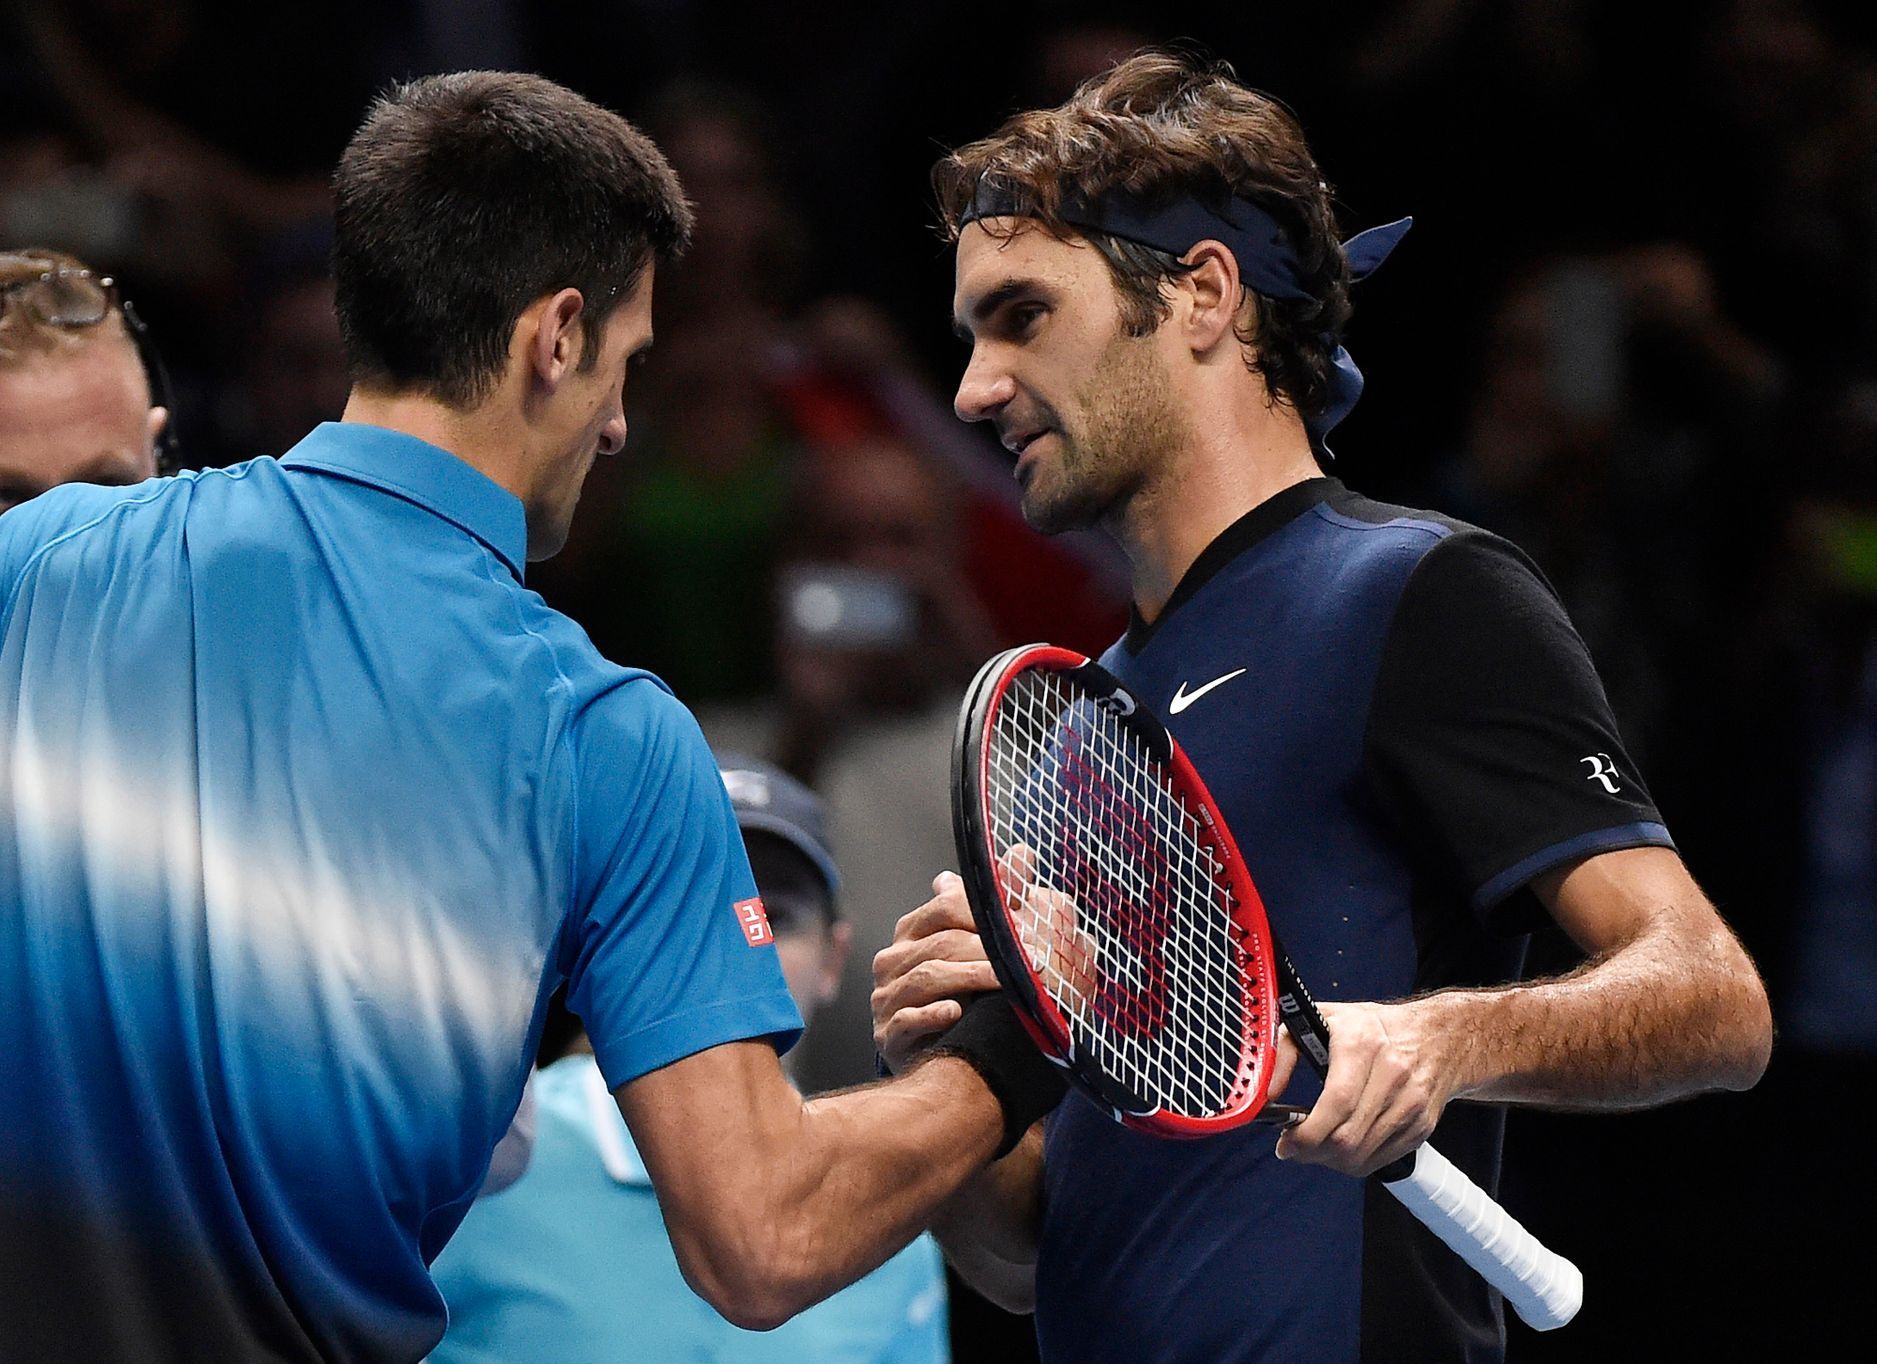 Novak Djokovič a Roger Federer na Turnaji mistrů